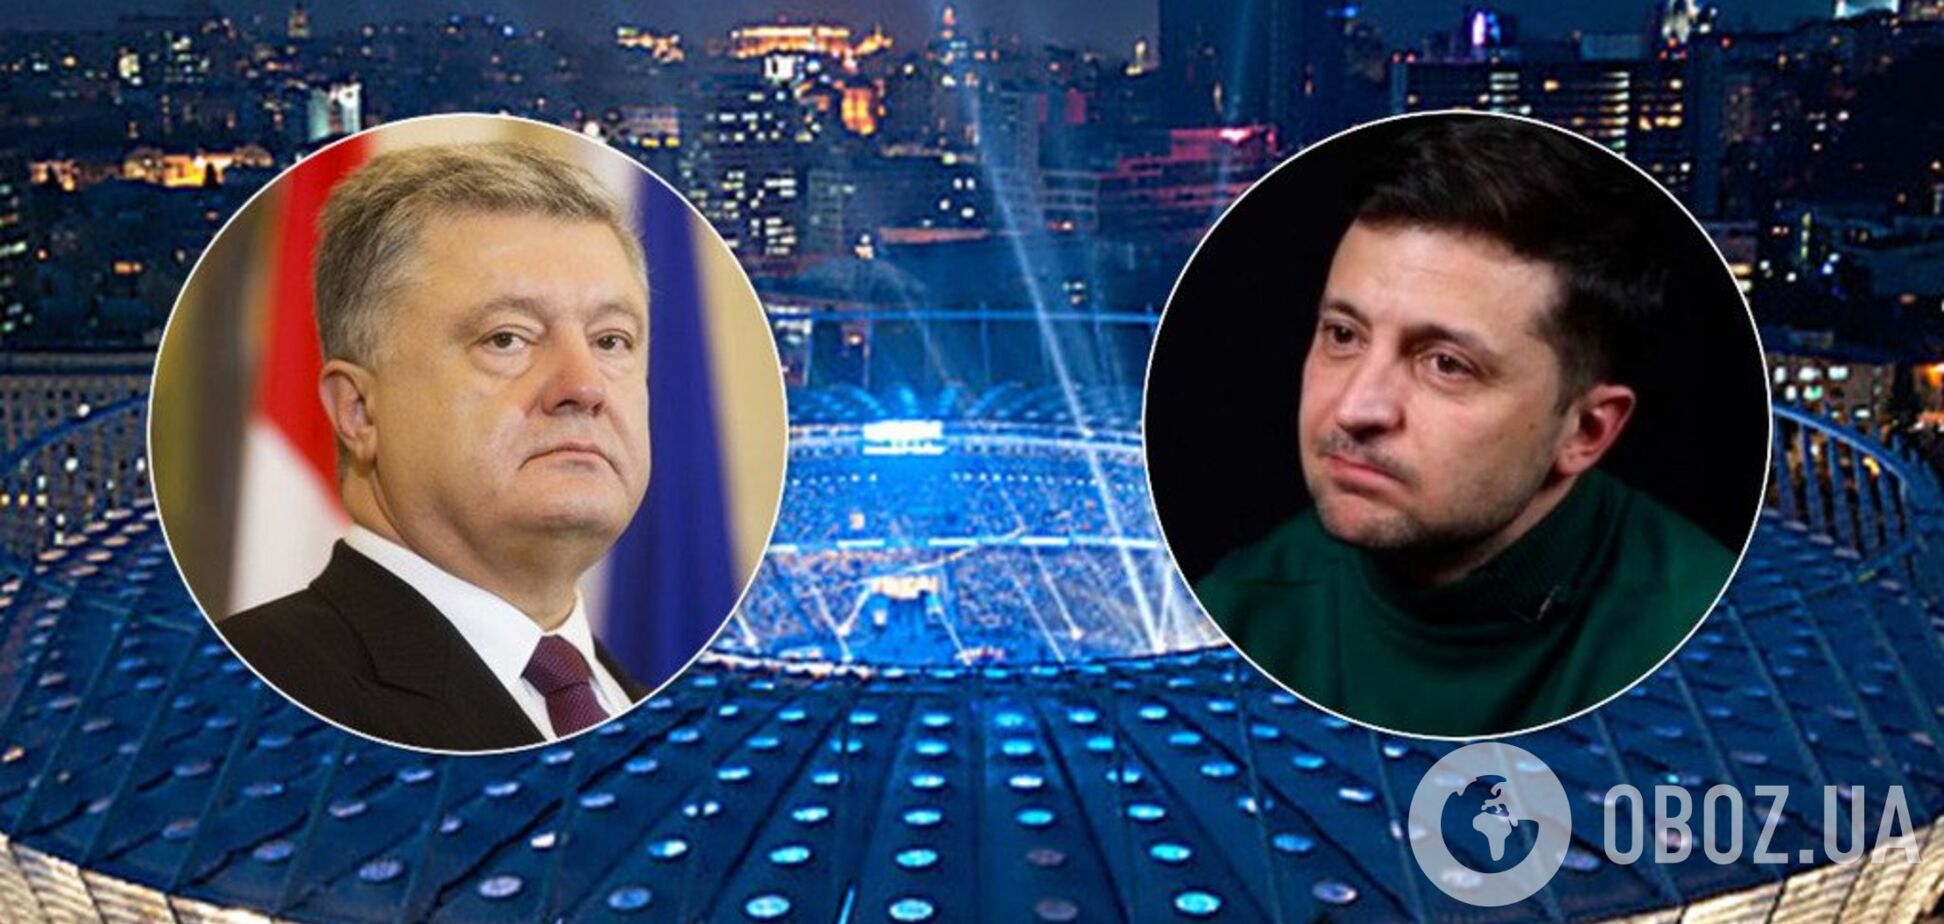 Во сколько дебаты Порошенко и Зеленского: смотреть онлайн видео